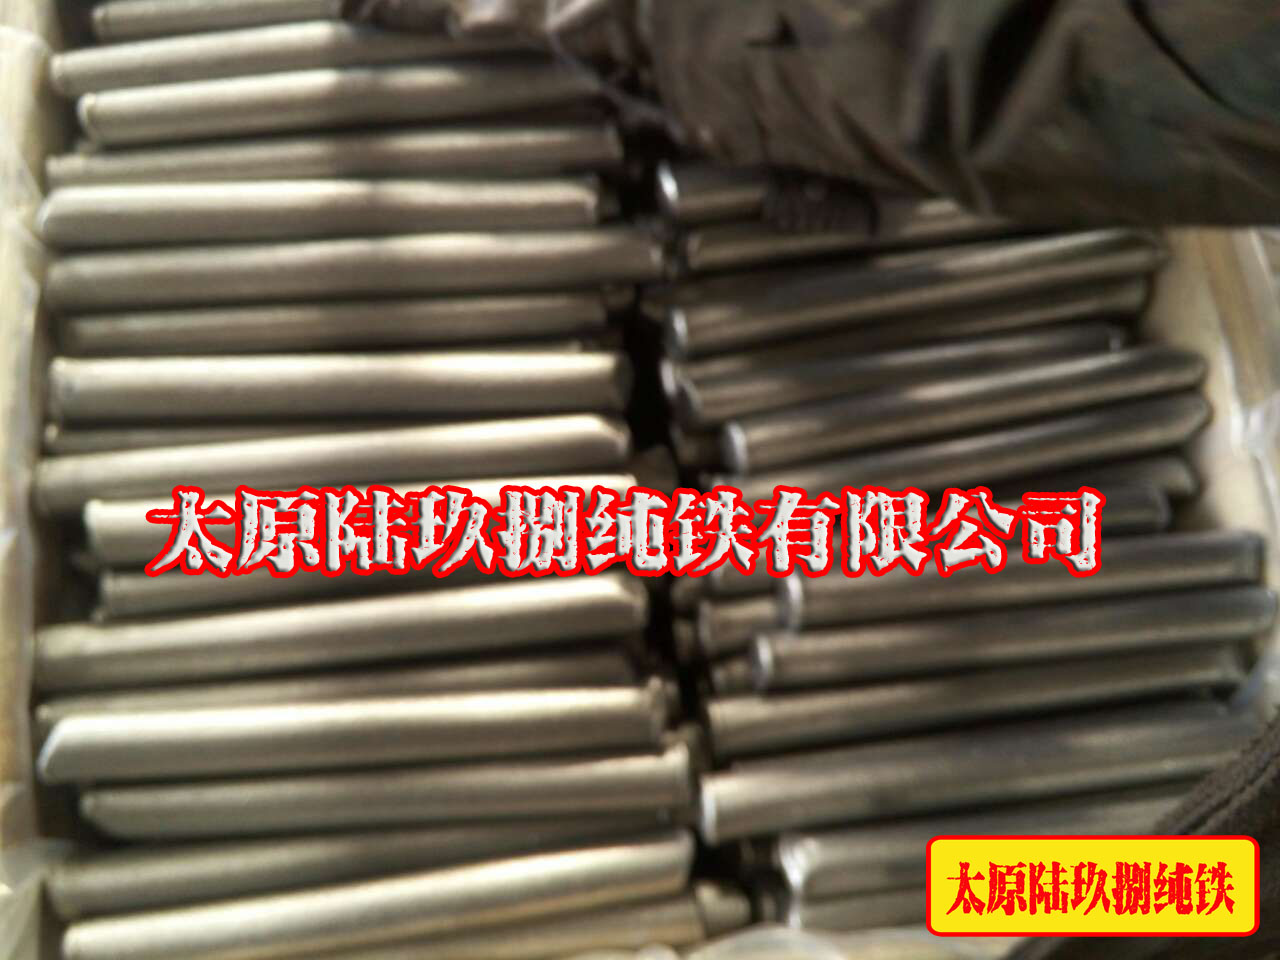 太原陆玖捌专业销售纯铁板坯 大量供应炉料纯铁   大量供应原料纯铁  炉料纯铁圆钢